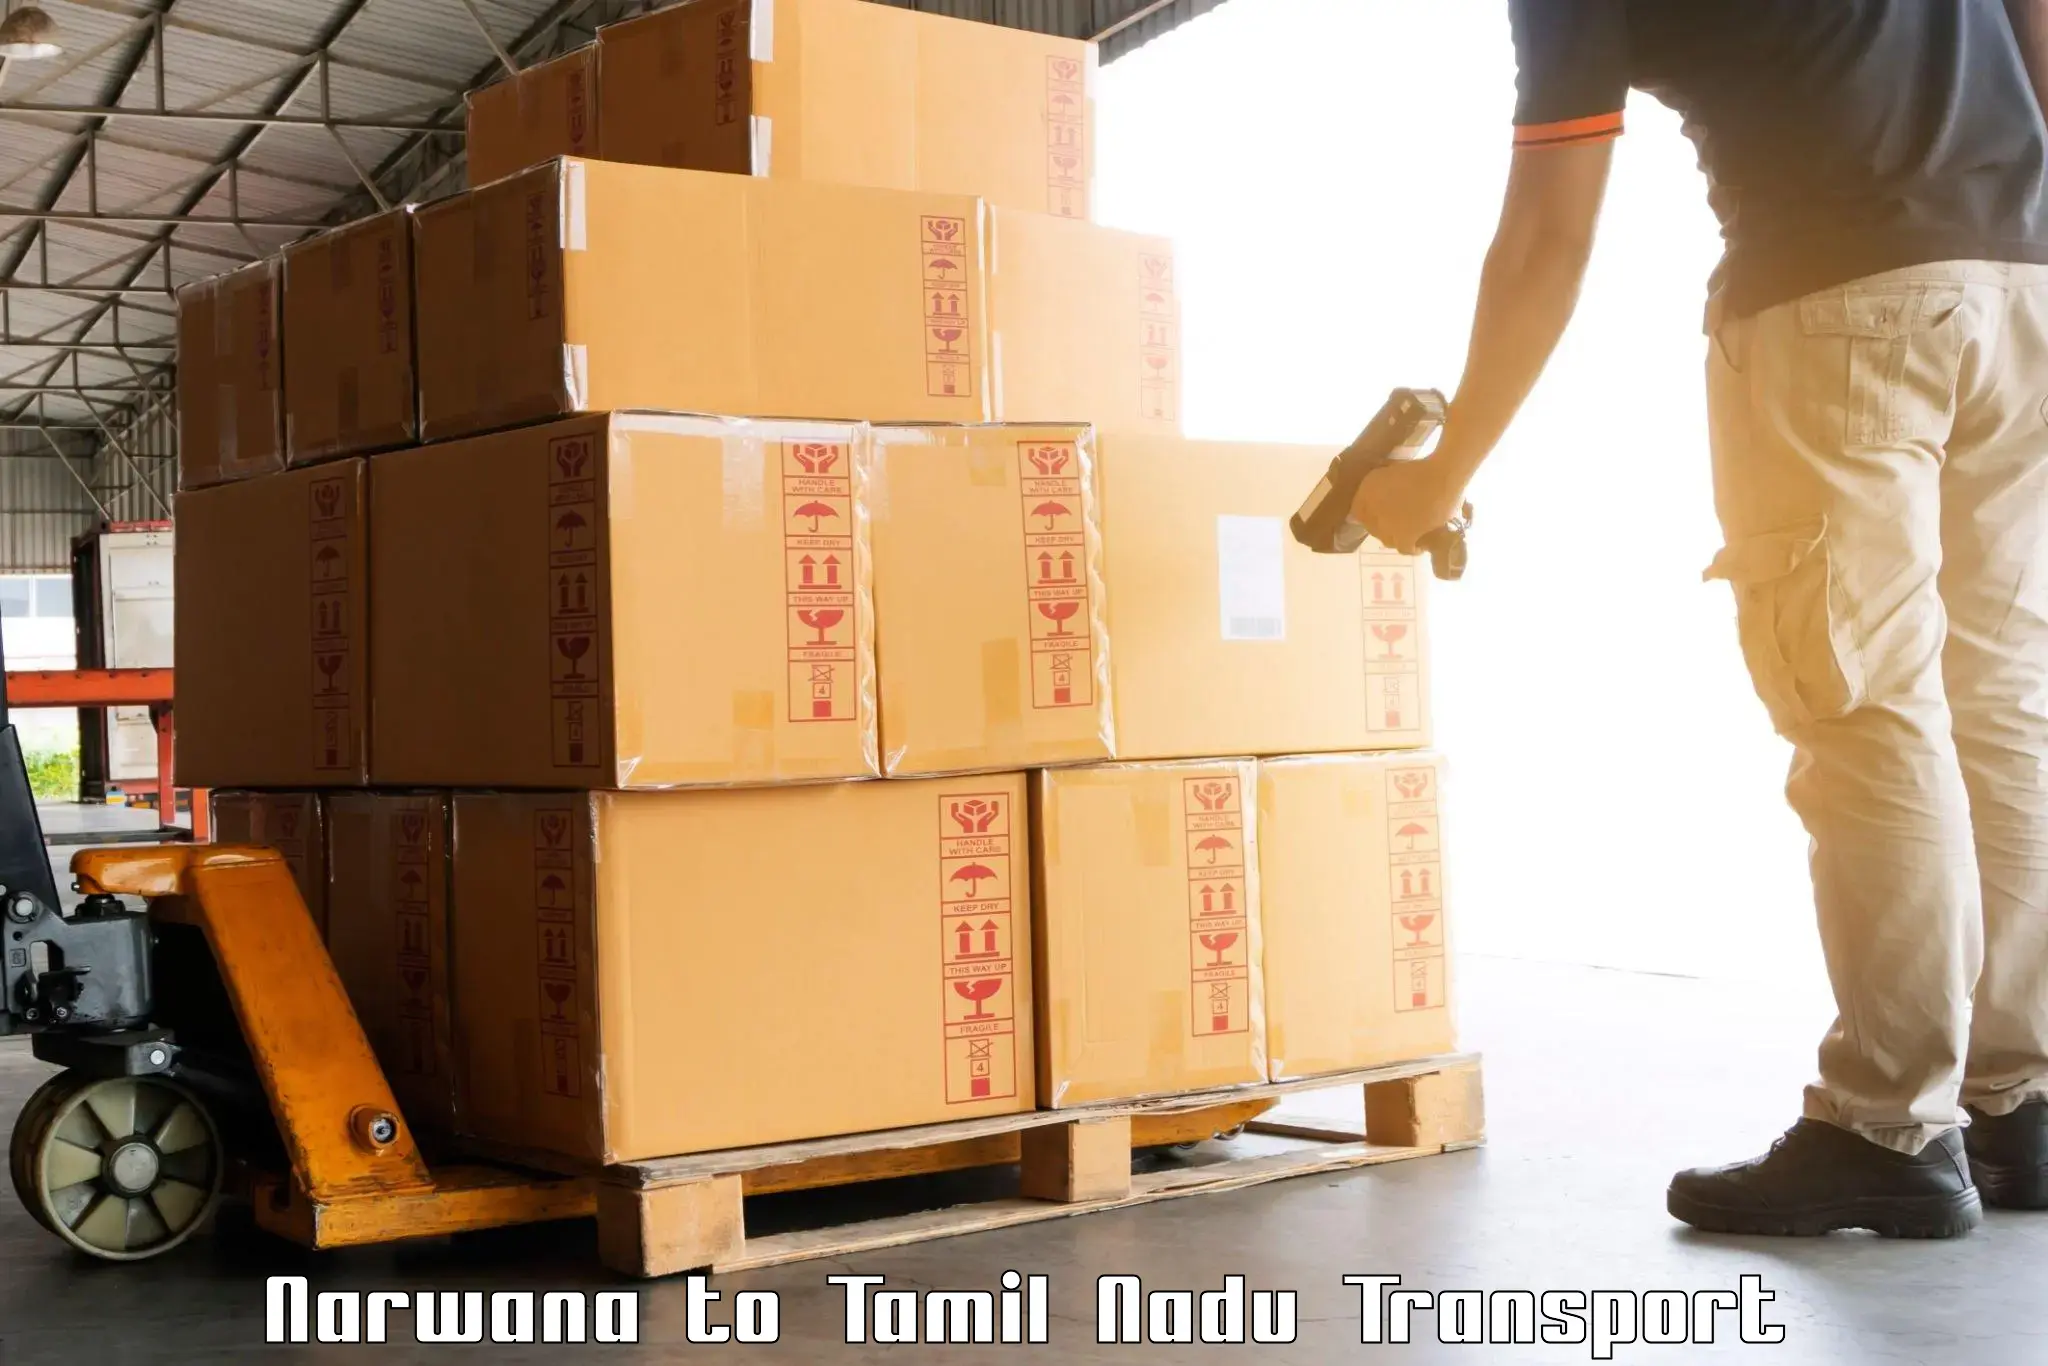 Online transport service Narwana to Thiruvadanai